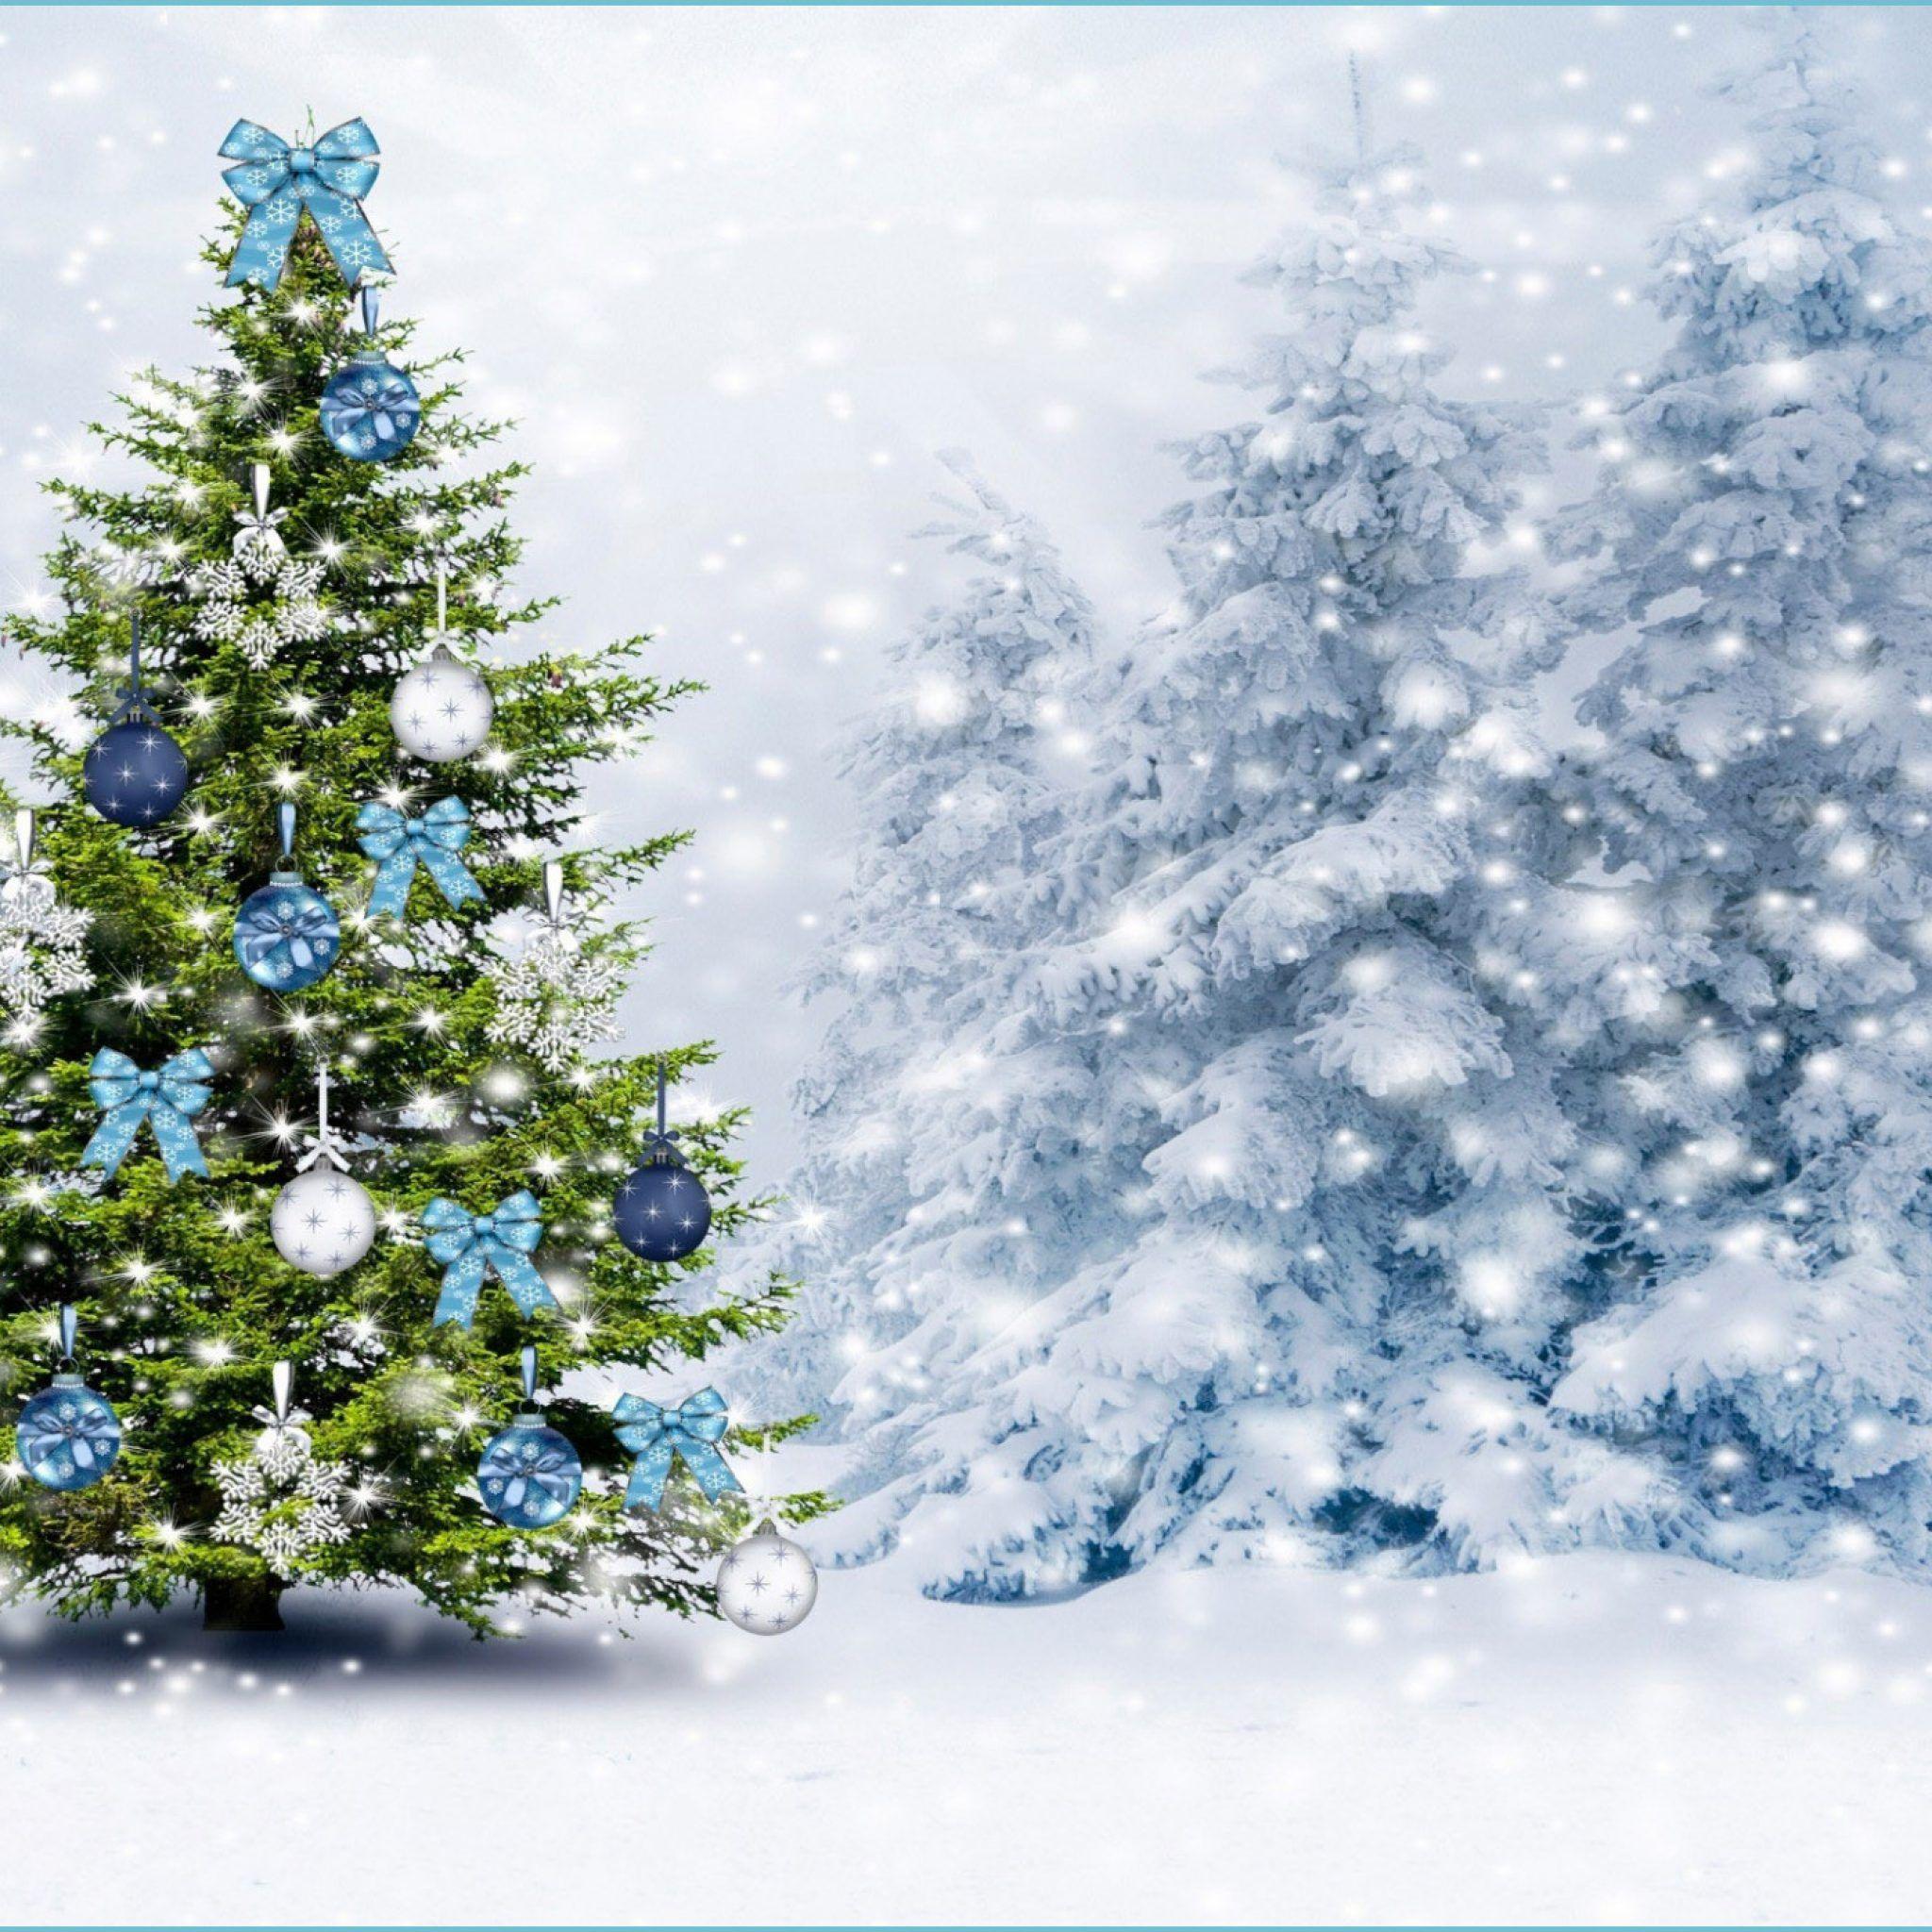 Hãy đón Giáng sinh với những bức ảnh nền thiên nhiên trắng phủ tuyết và chiếc cây thông Noel lung linh này. Hình ảnh tuyết phủ trên cây thông Noel mang lại cảm giác yên bình và ần tượng, đem đến cho bạn một mùa giáng sinh đáng nhớ.